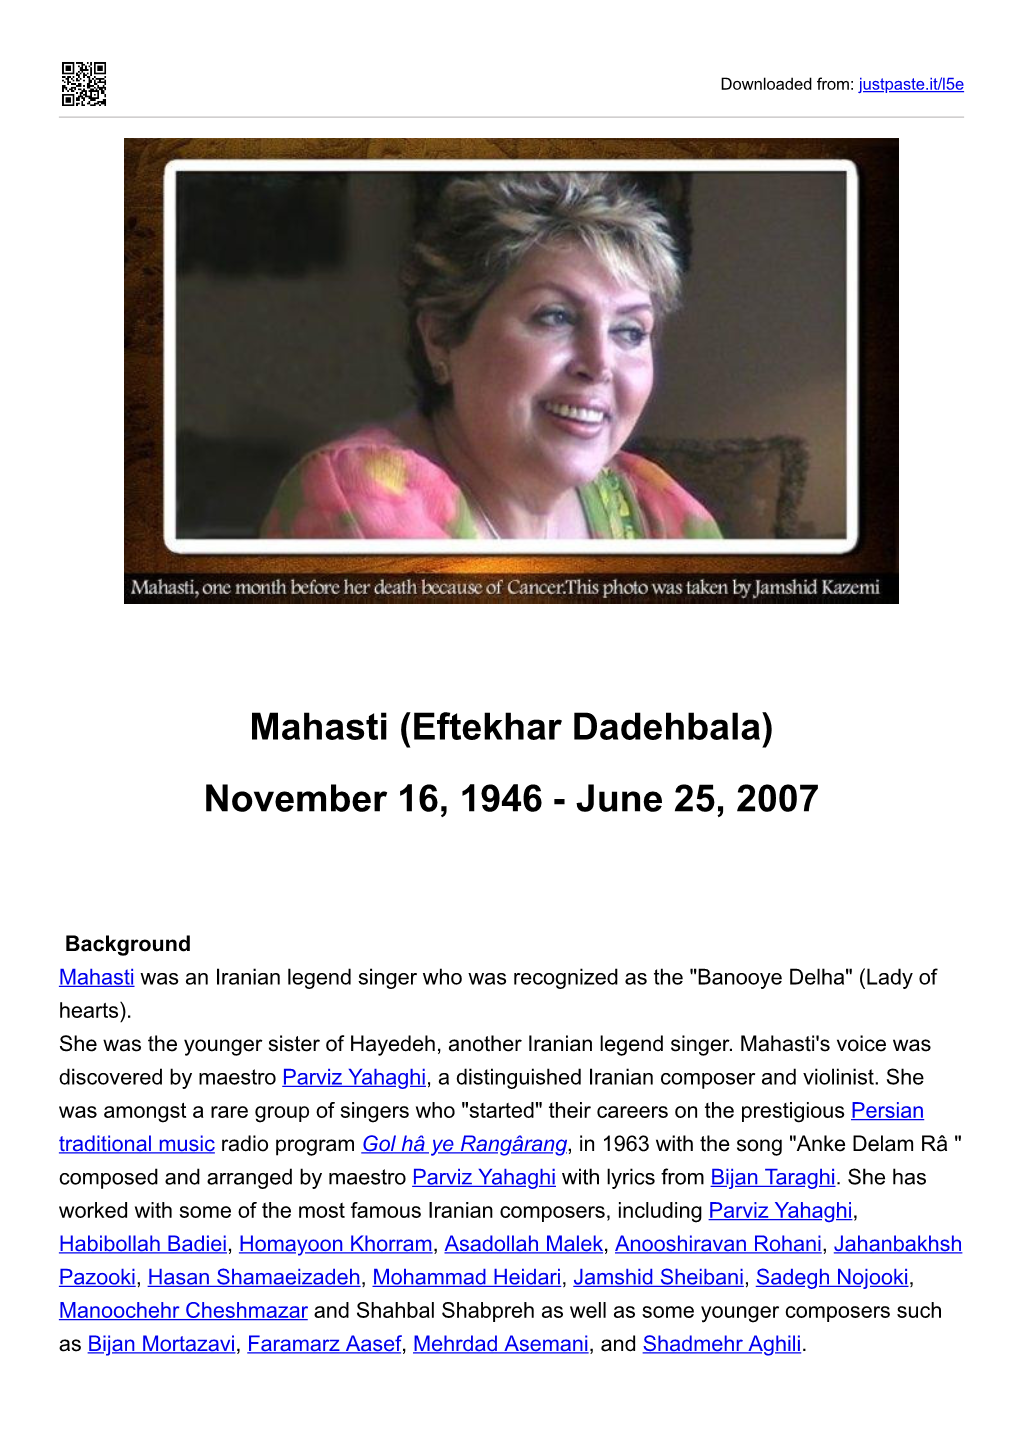 Mahasti (Eftekhar Dadehbala) November 16, 1946 - June 25, 2007